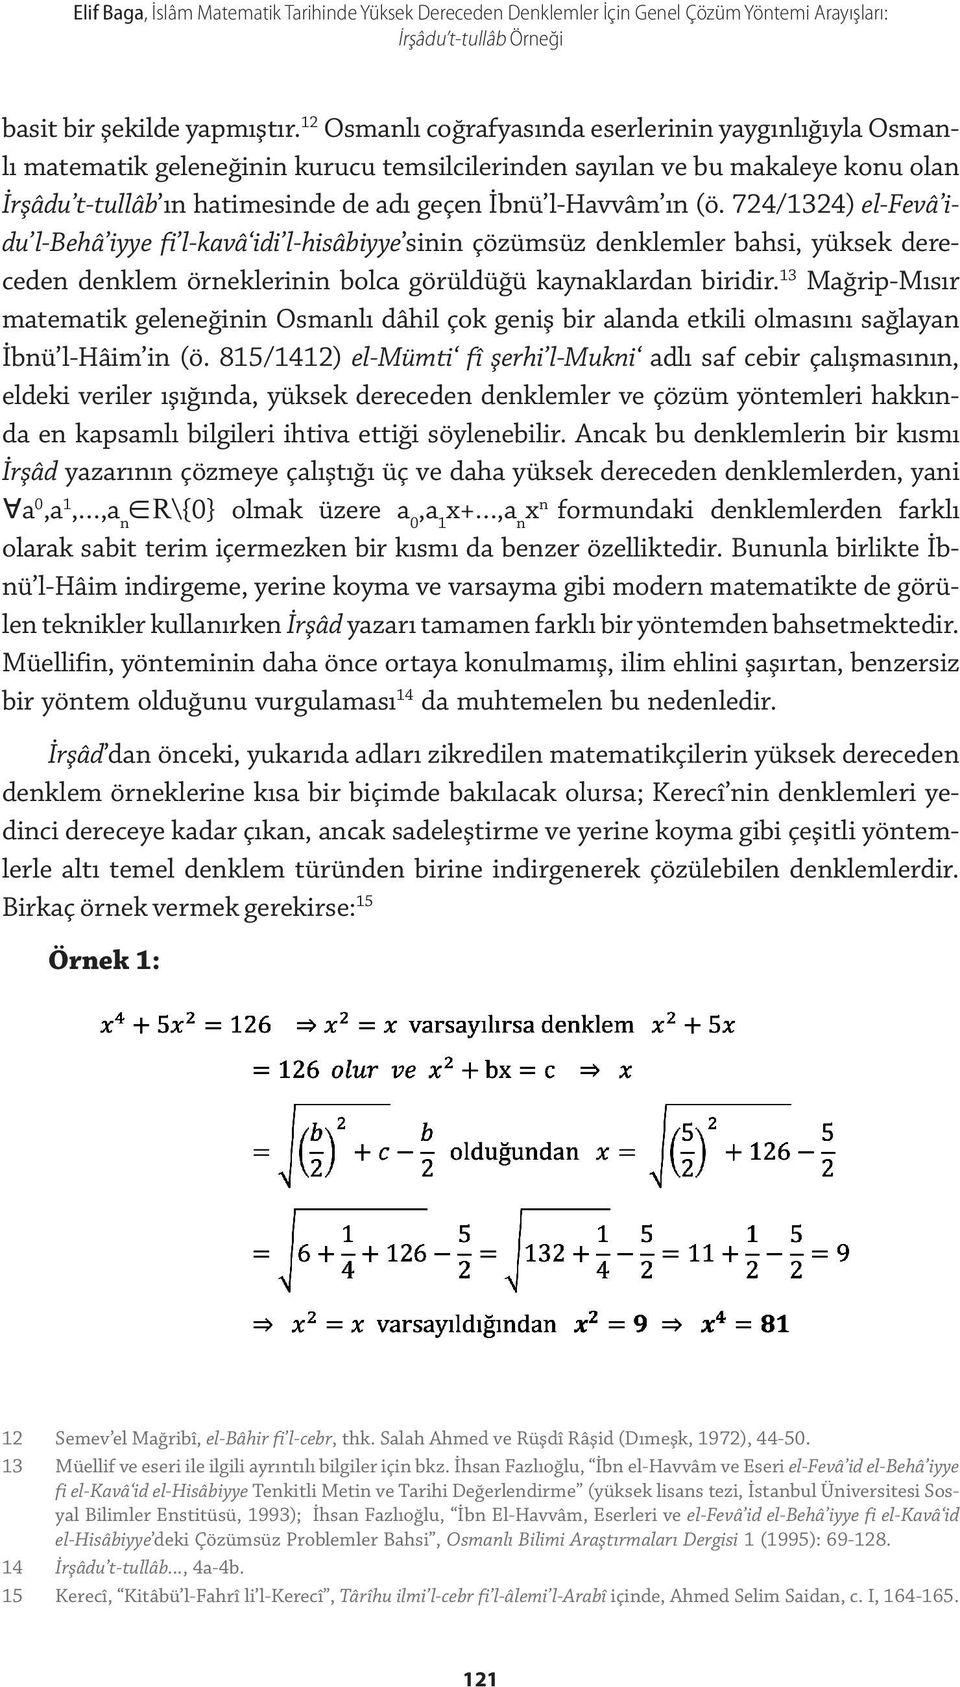 (ö. 724/1324) el-fevâ idu l-behâ iyye fi l-kavâ idi l-hisâbiyye sinin çözümsüz denklemler bahsi, yüksek dereceden denklem örneklerinin bolca görüldüğü kaynaklardan biridir.